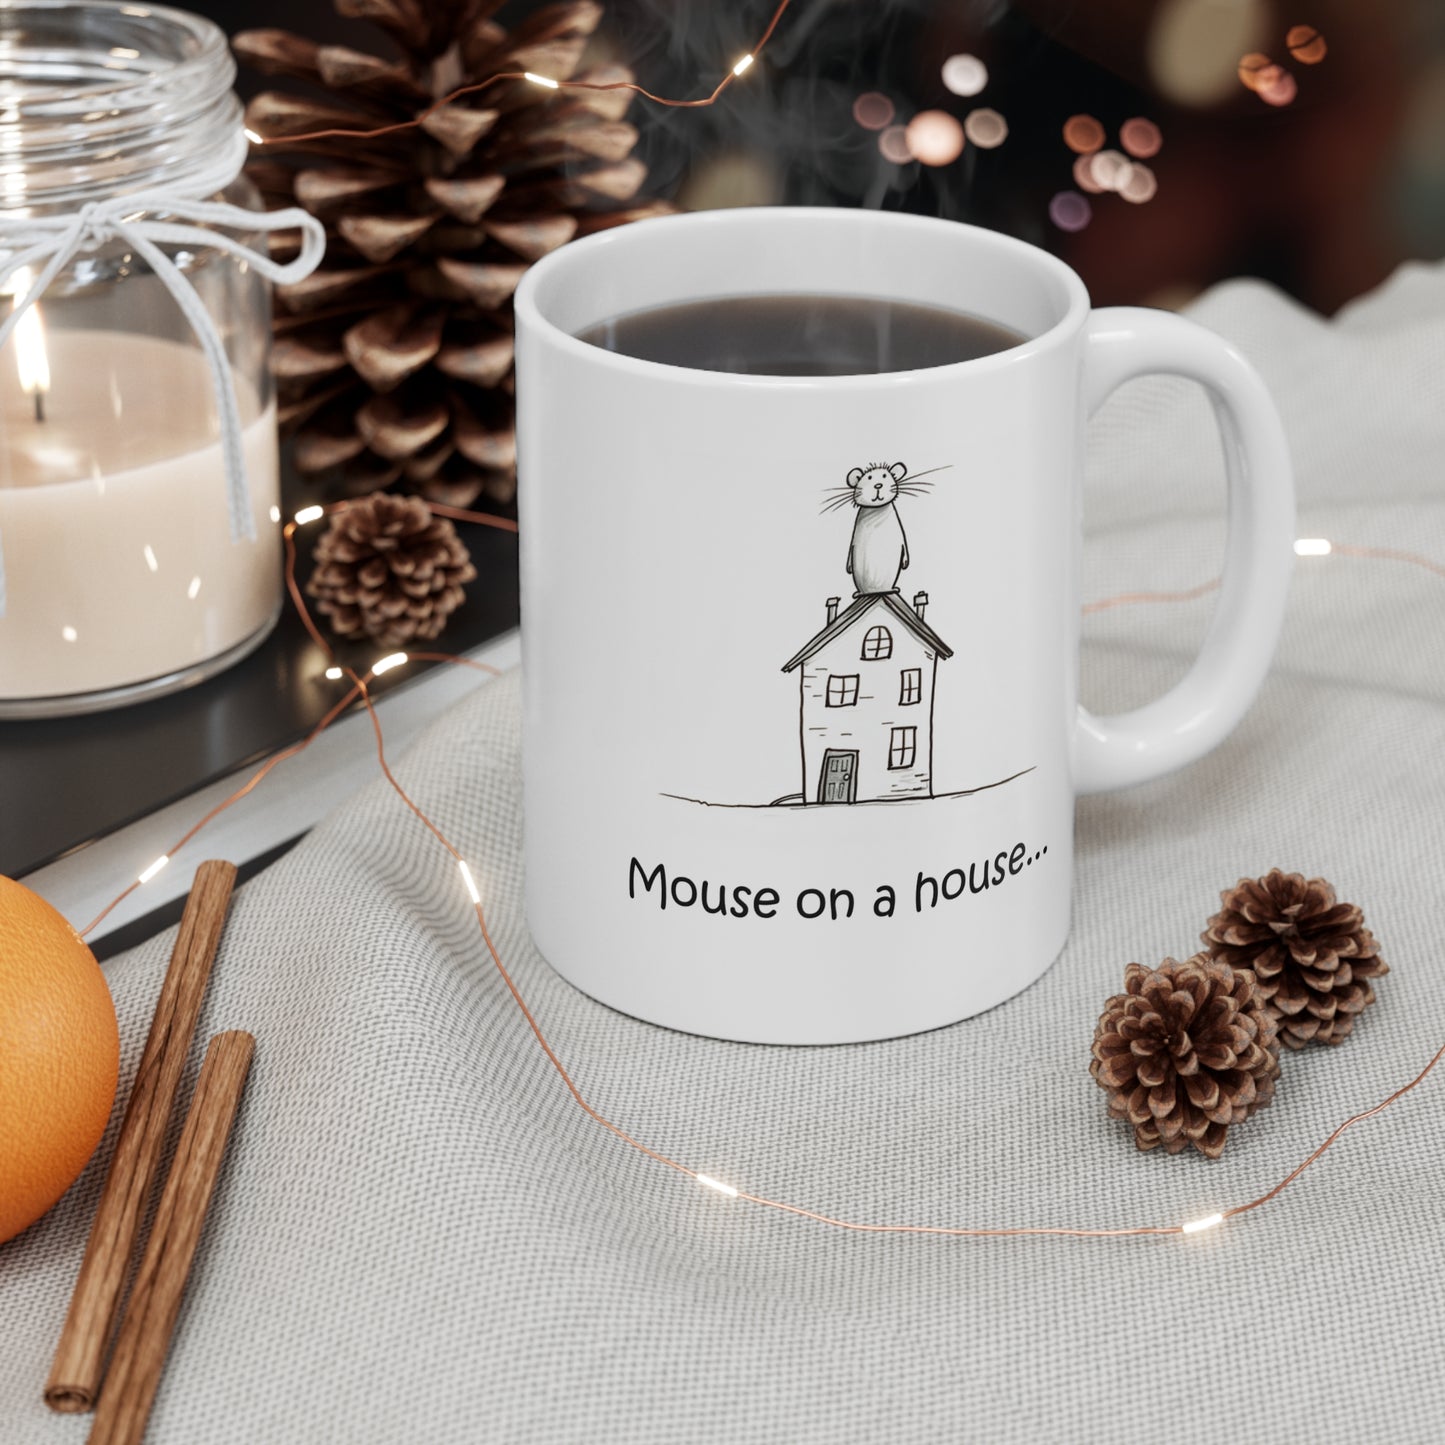 Mouse on a house - Mug 11oz